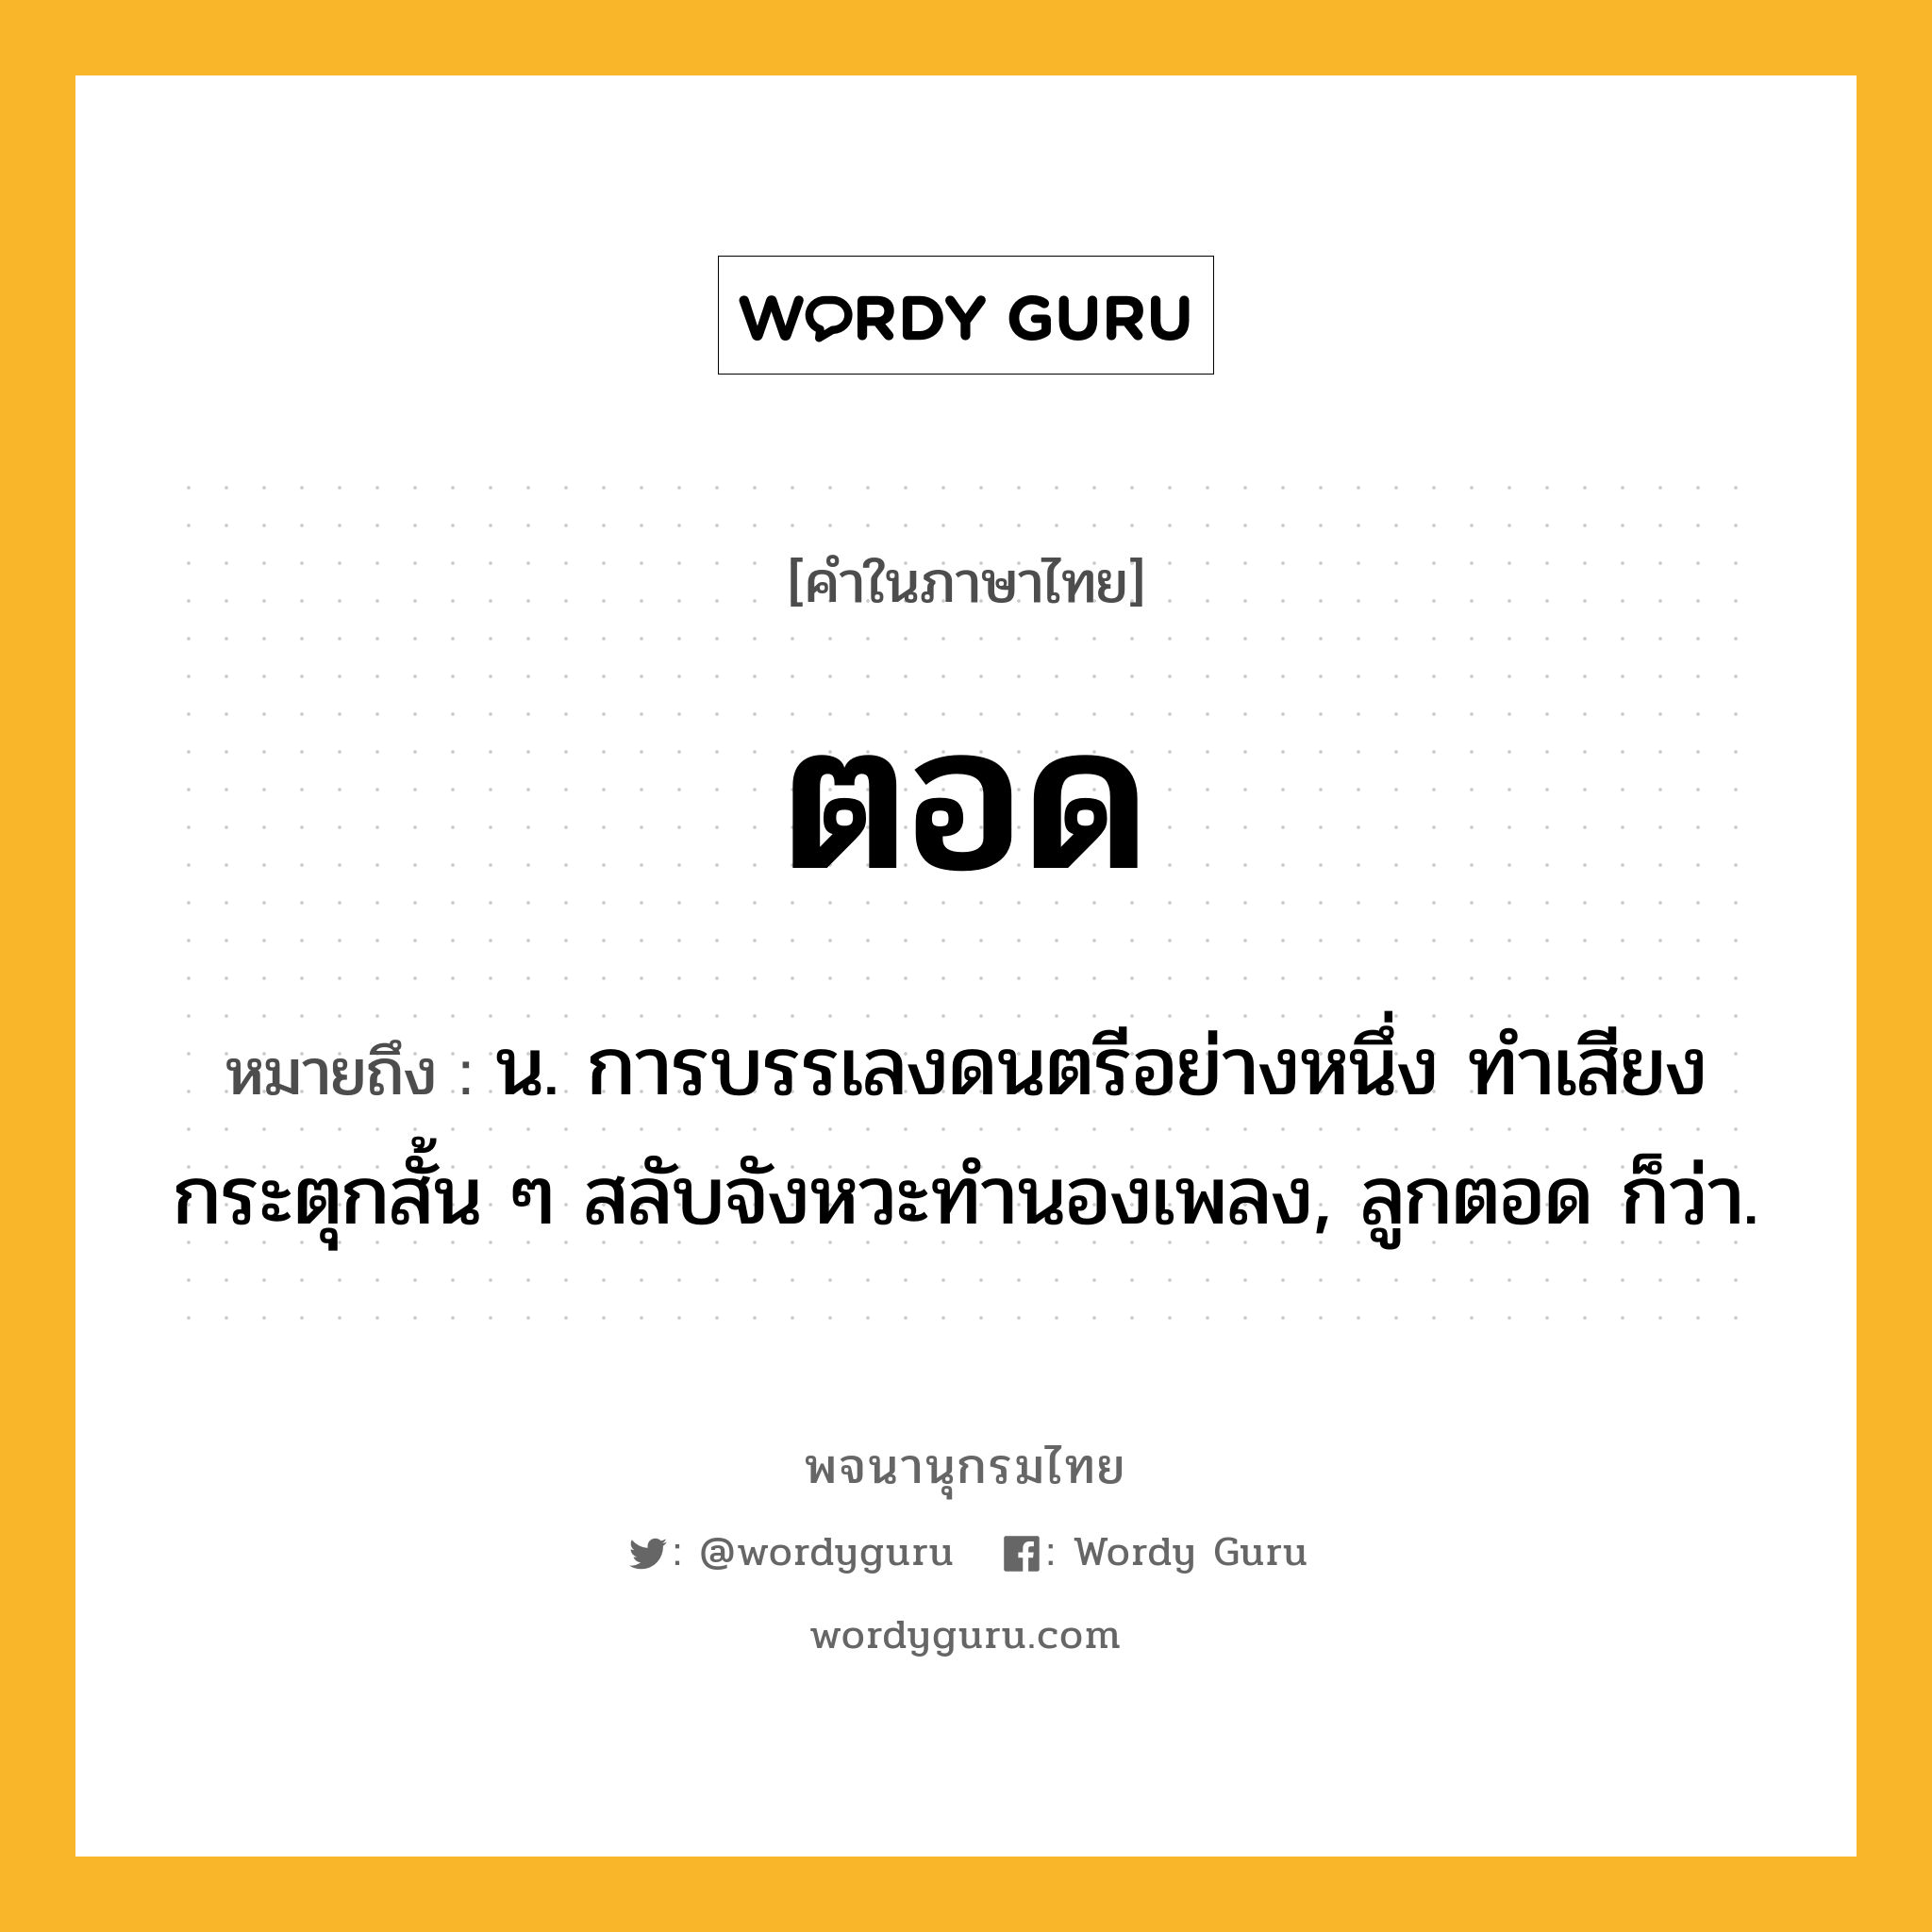 ตอด ความหมาย หมายถึงอะไร?, คำในภาษาไทย ตอด หมายถึง น. การบรรเลงดนตรีอย่างหนึ่ง ทําเสียงกระตุกสั้น ๆ สลับจังหวะทํานองเพลง, ลูกตอด ก็ว่า.